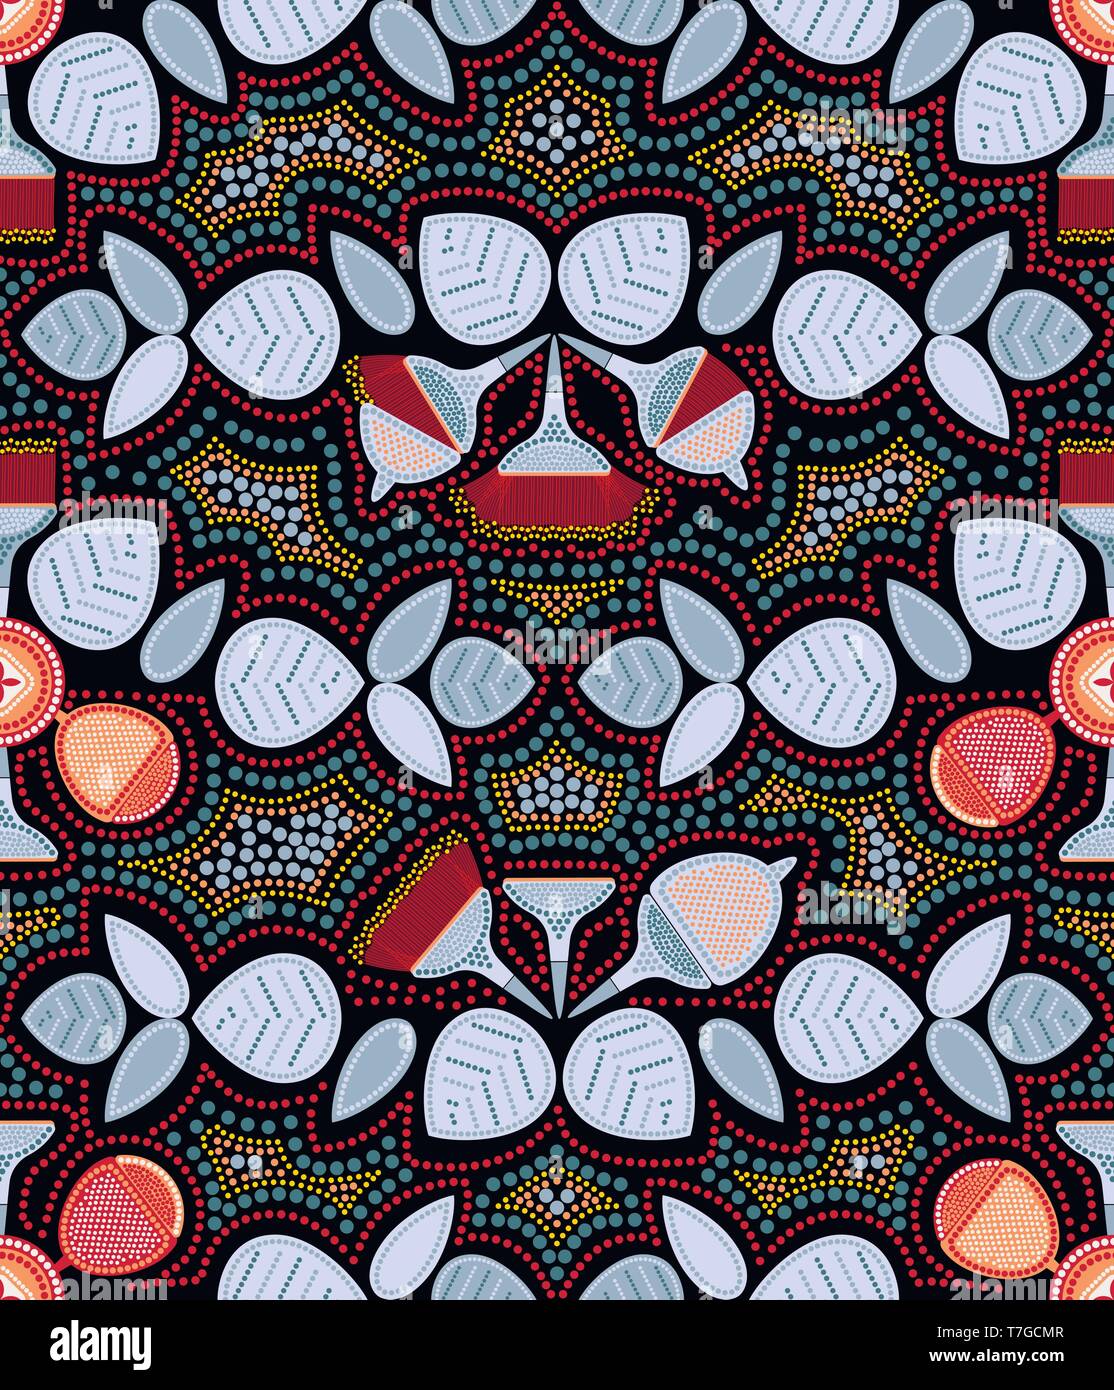 Modèle sans couture d'Eucalyptus. Dessin stylisé d'une plante de l'Australie. L'art aborigène Art Point palette de couleurs limitée Illustration de Vecteur